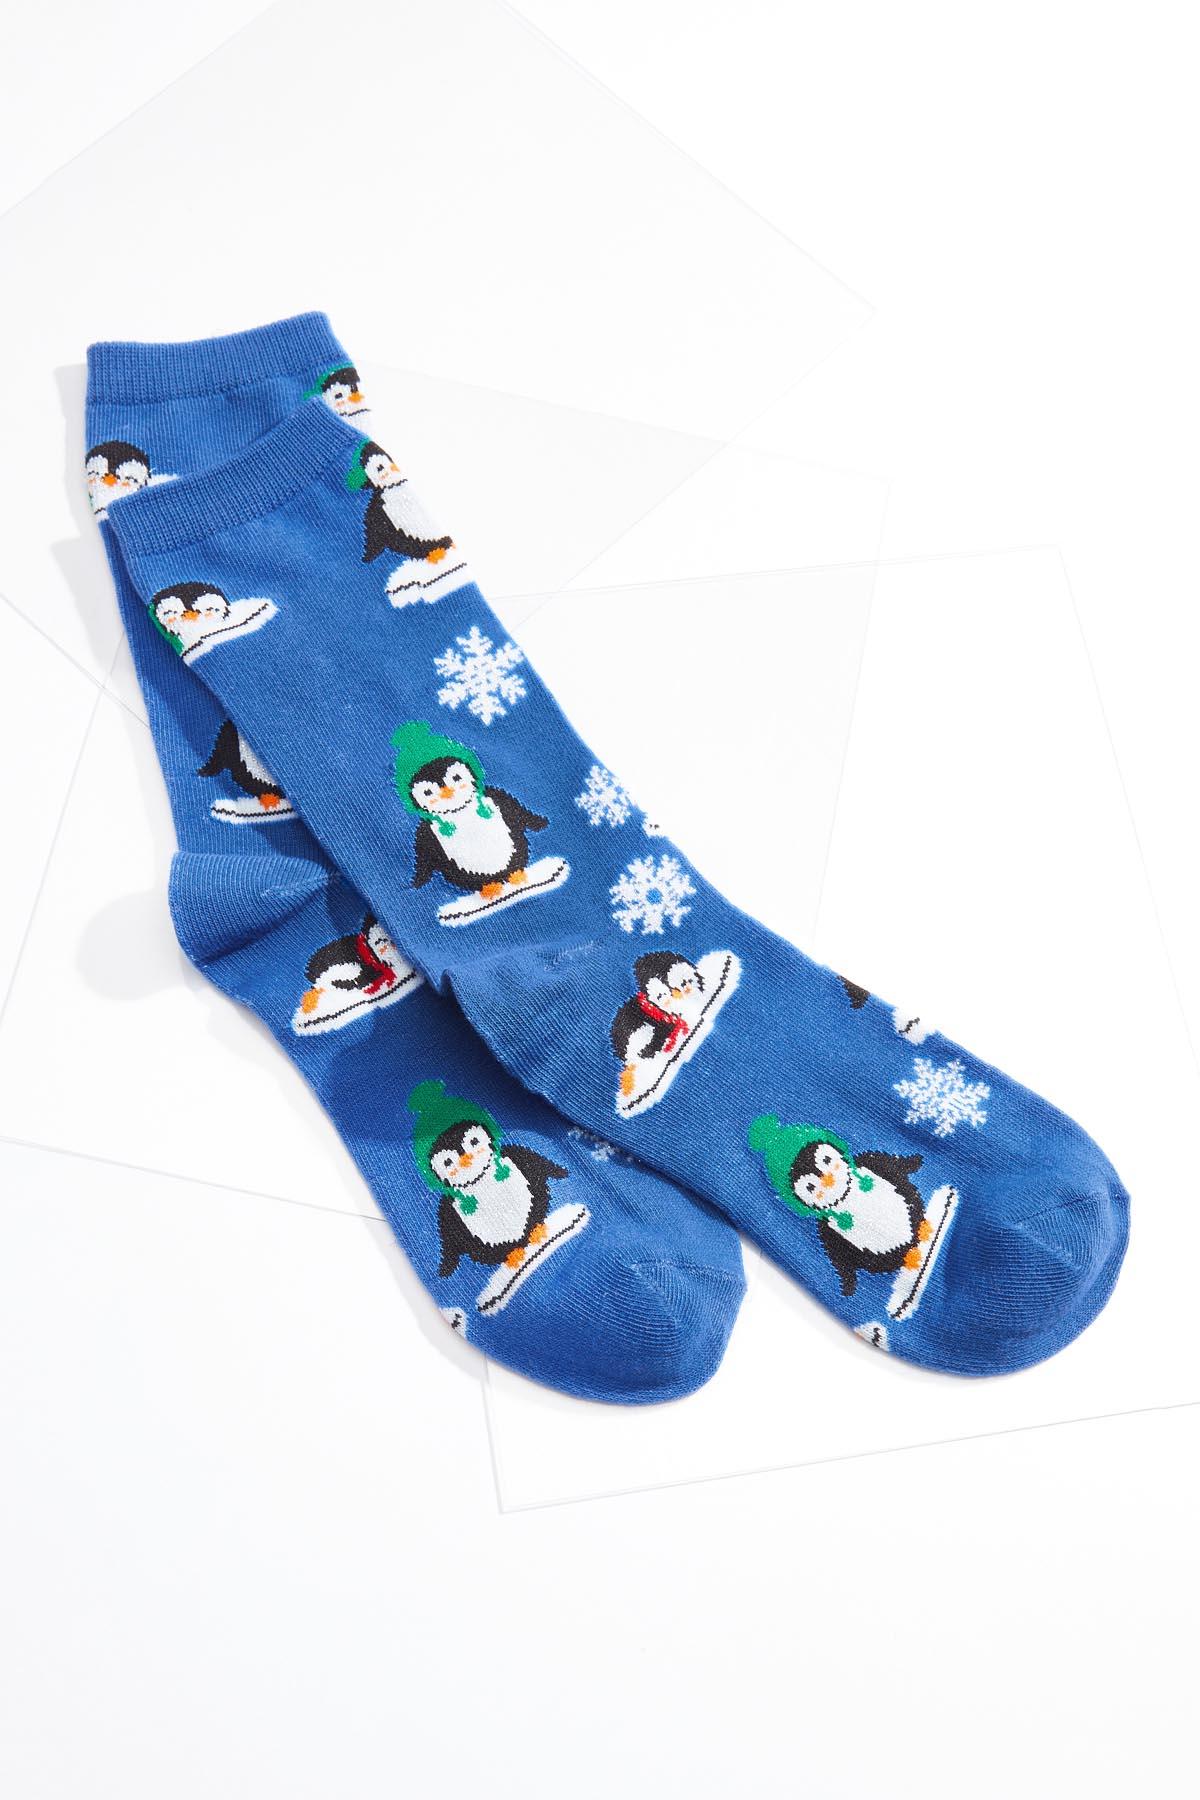 Penguins On Ice Socks